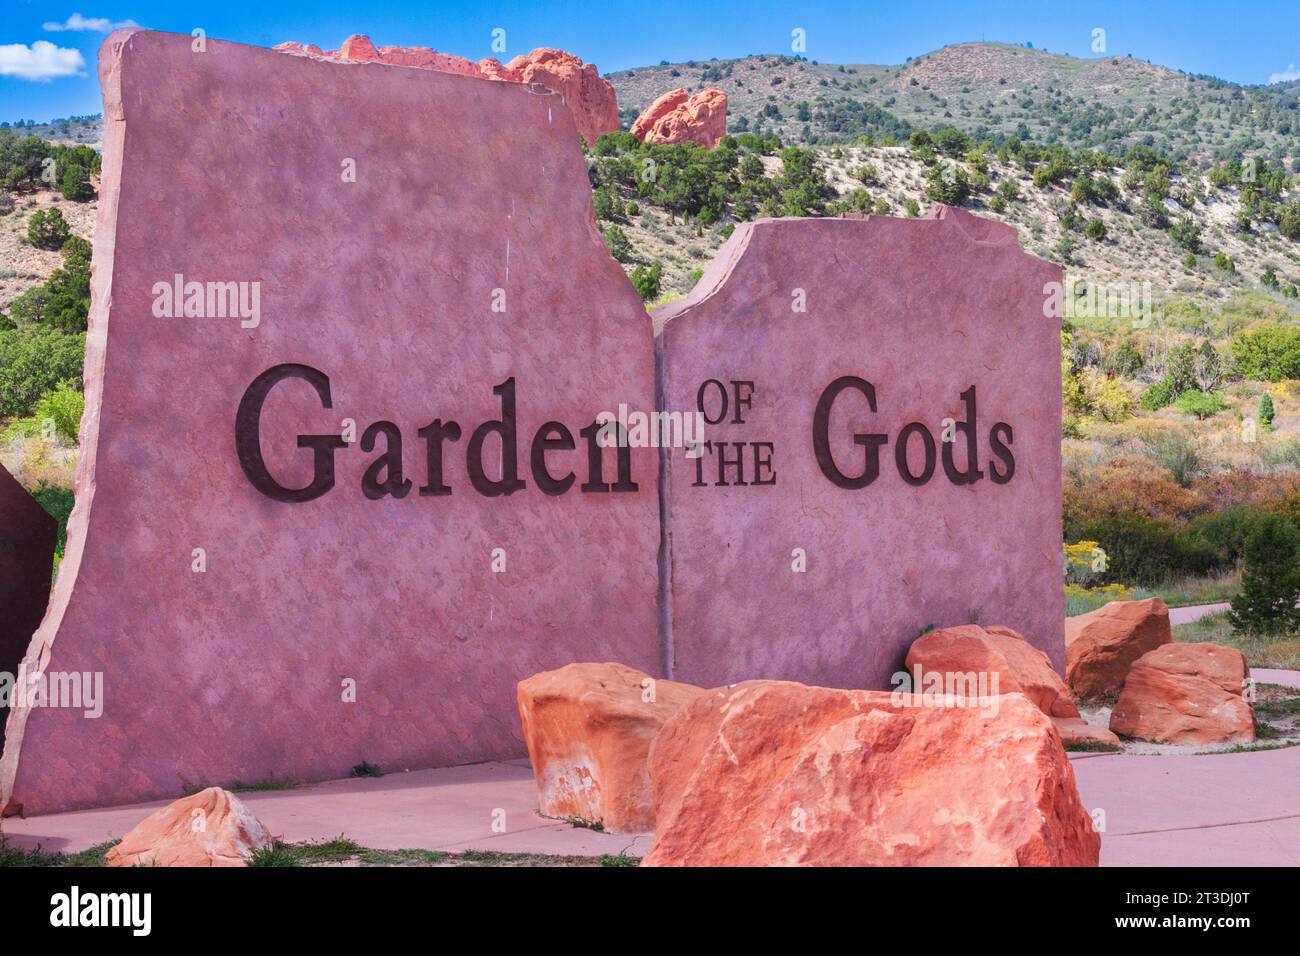 Parc public gratuit Garden of the Gods à Colorado Springs, Colorado. Ce parc possède des caractéristiques géologiques et des formations remarquables. Banque D'Images